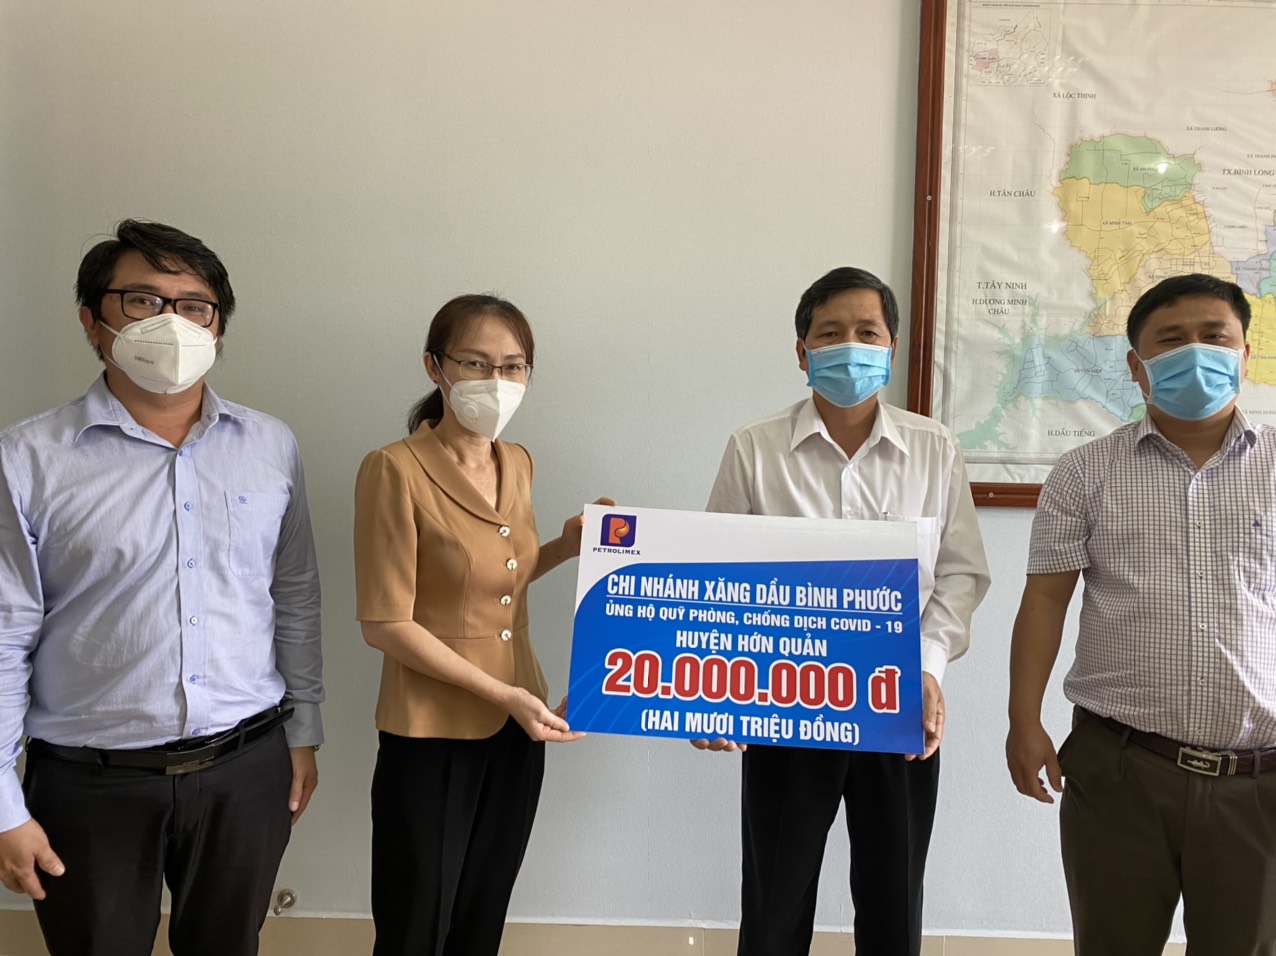 Chi nhánh xăng dầu Bình Phước ủng hộ Hớn Quản 20 triệu đồng công tác phòng, chống dịch COVID-19